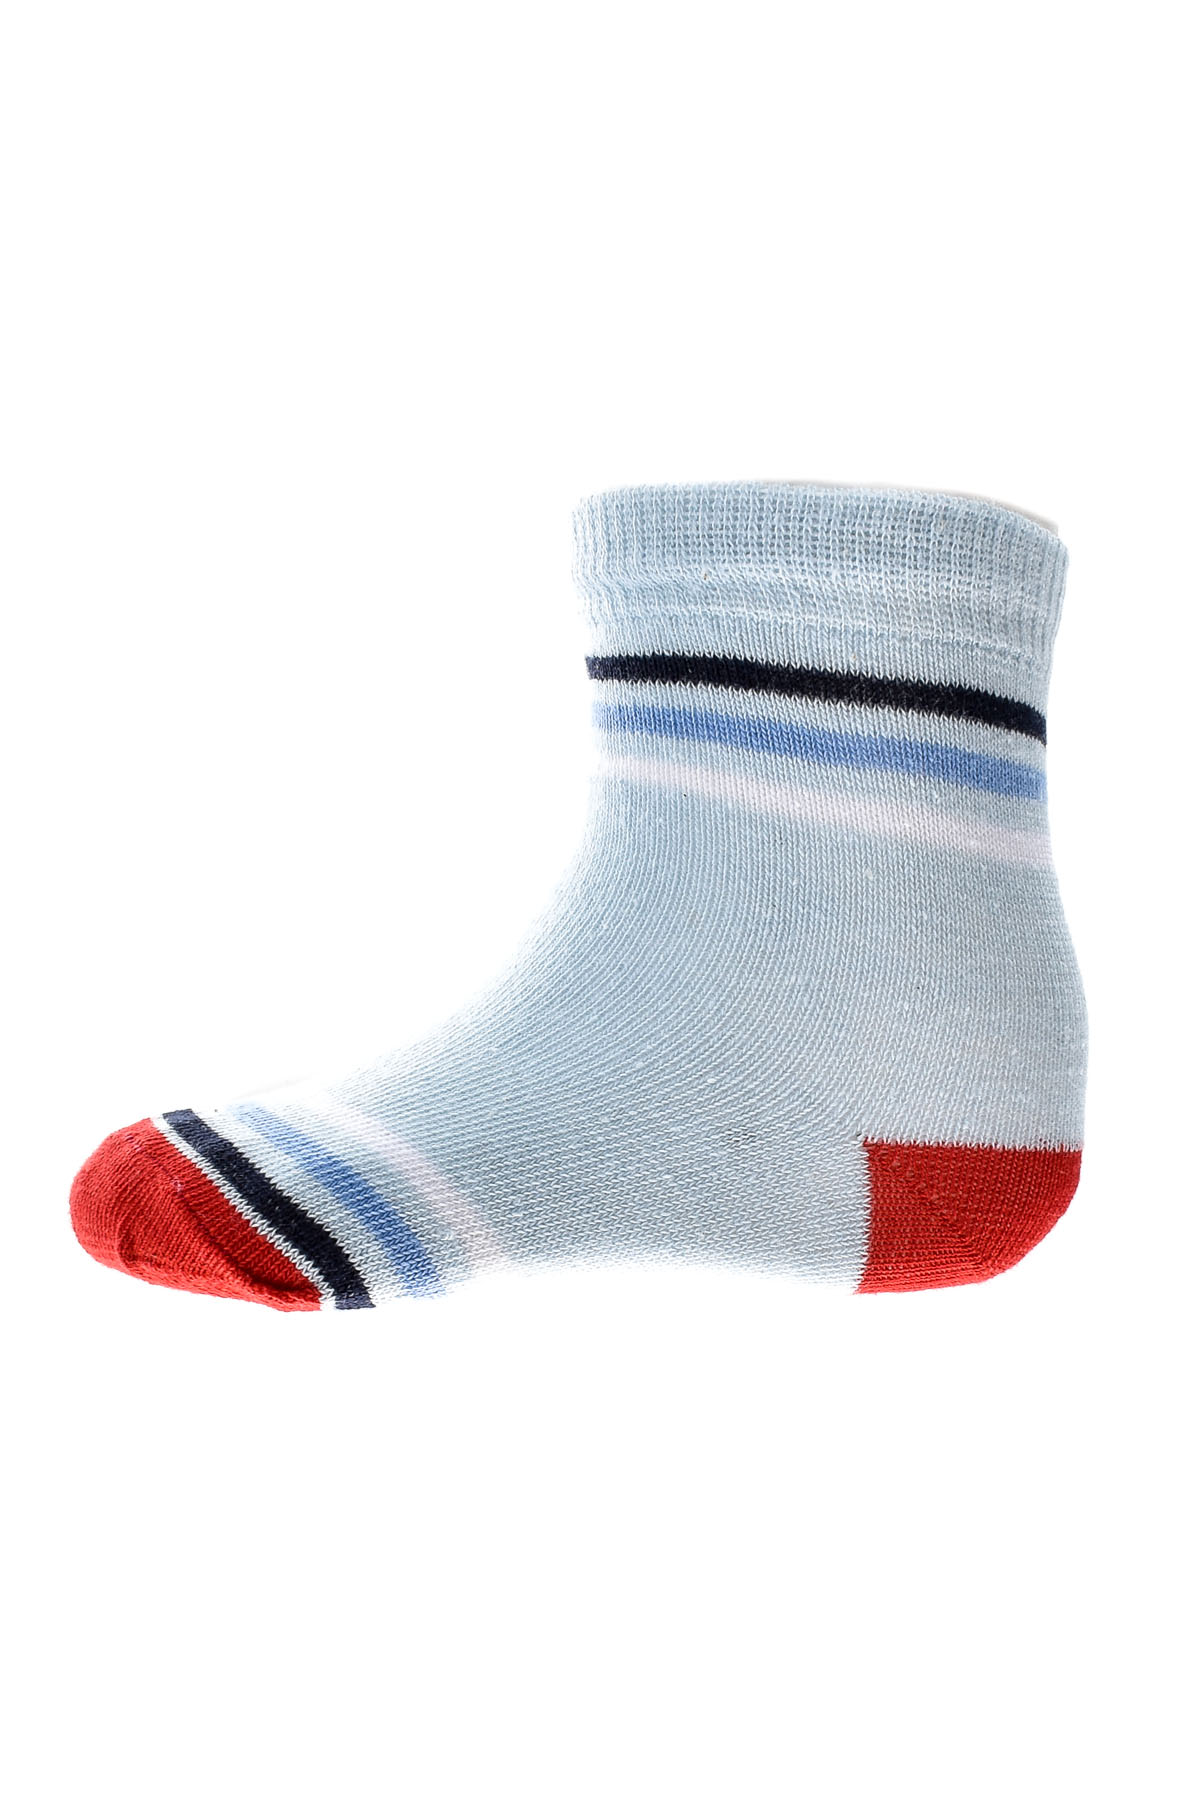 Kids' Socks - BebeLino - 0